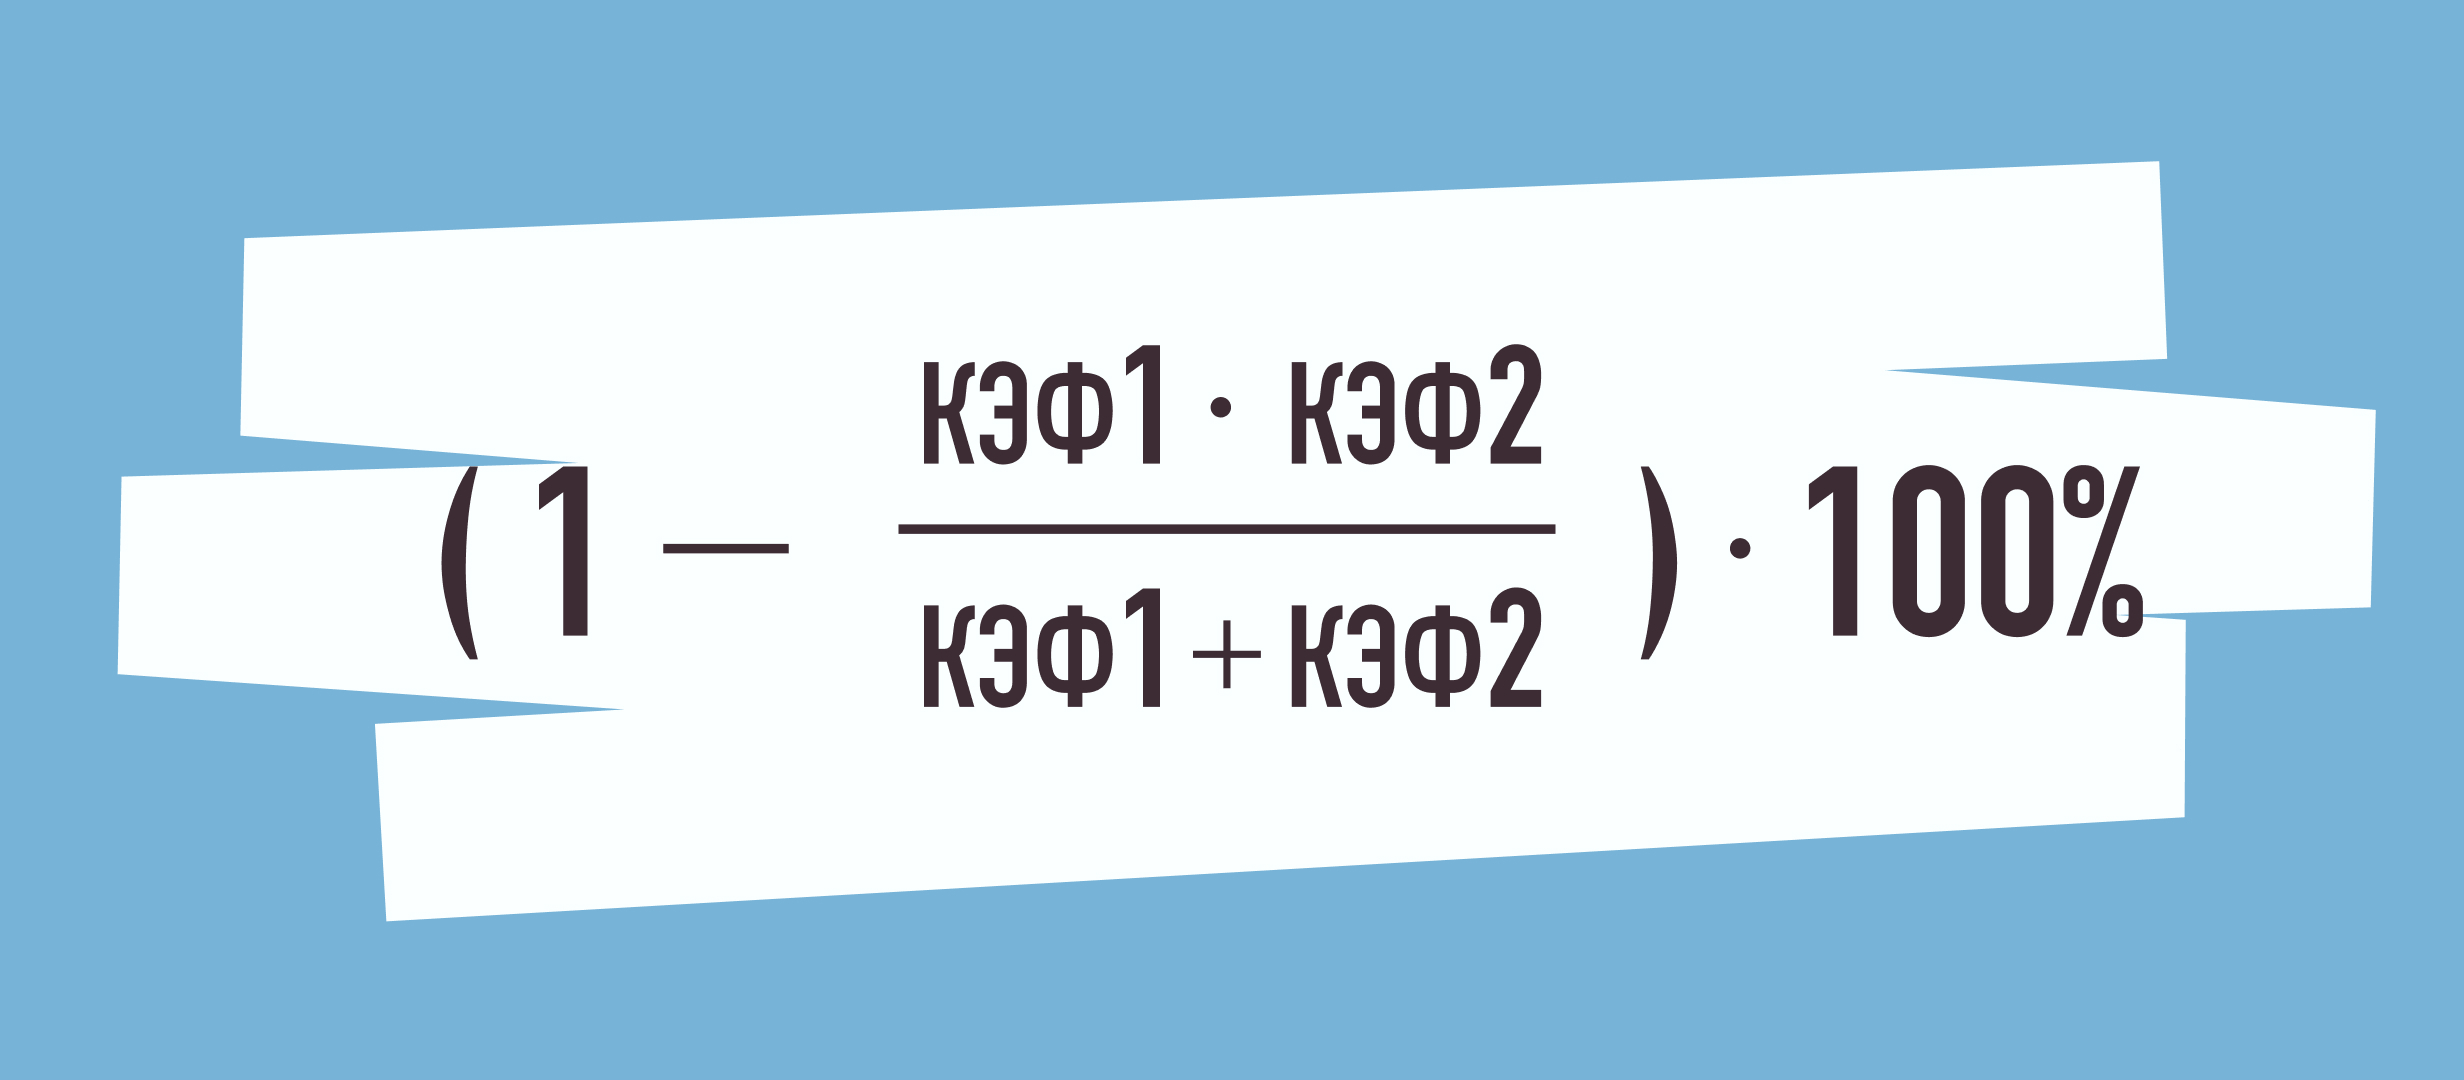 Как посчитать маржу букмекера: формула маржи, пример расчета